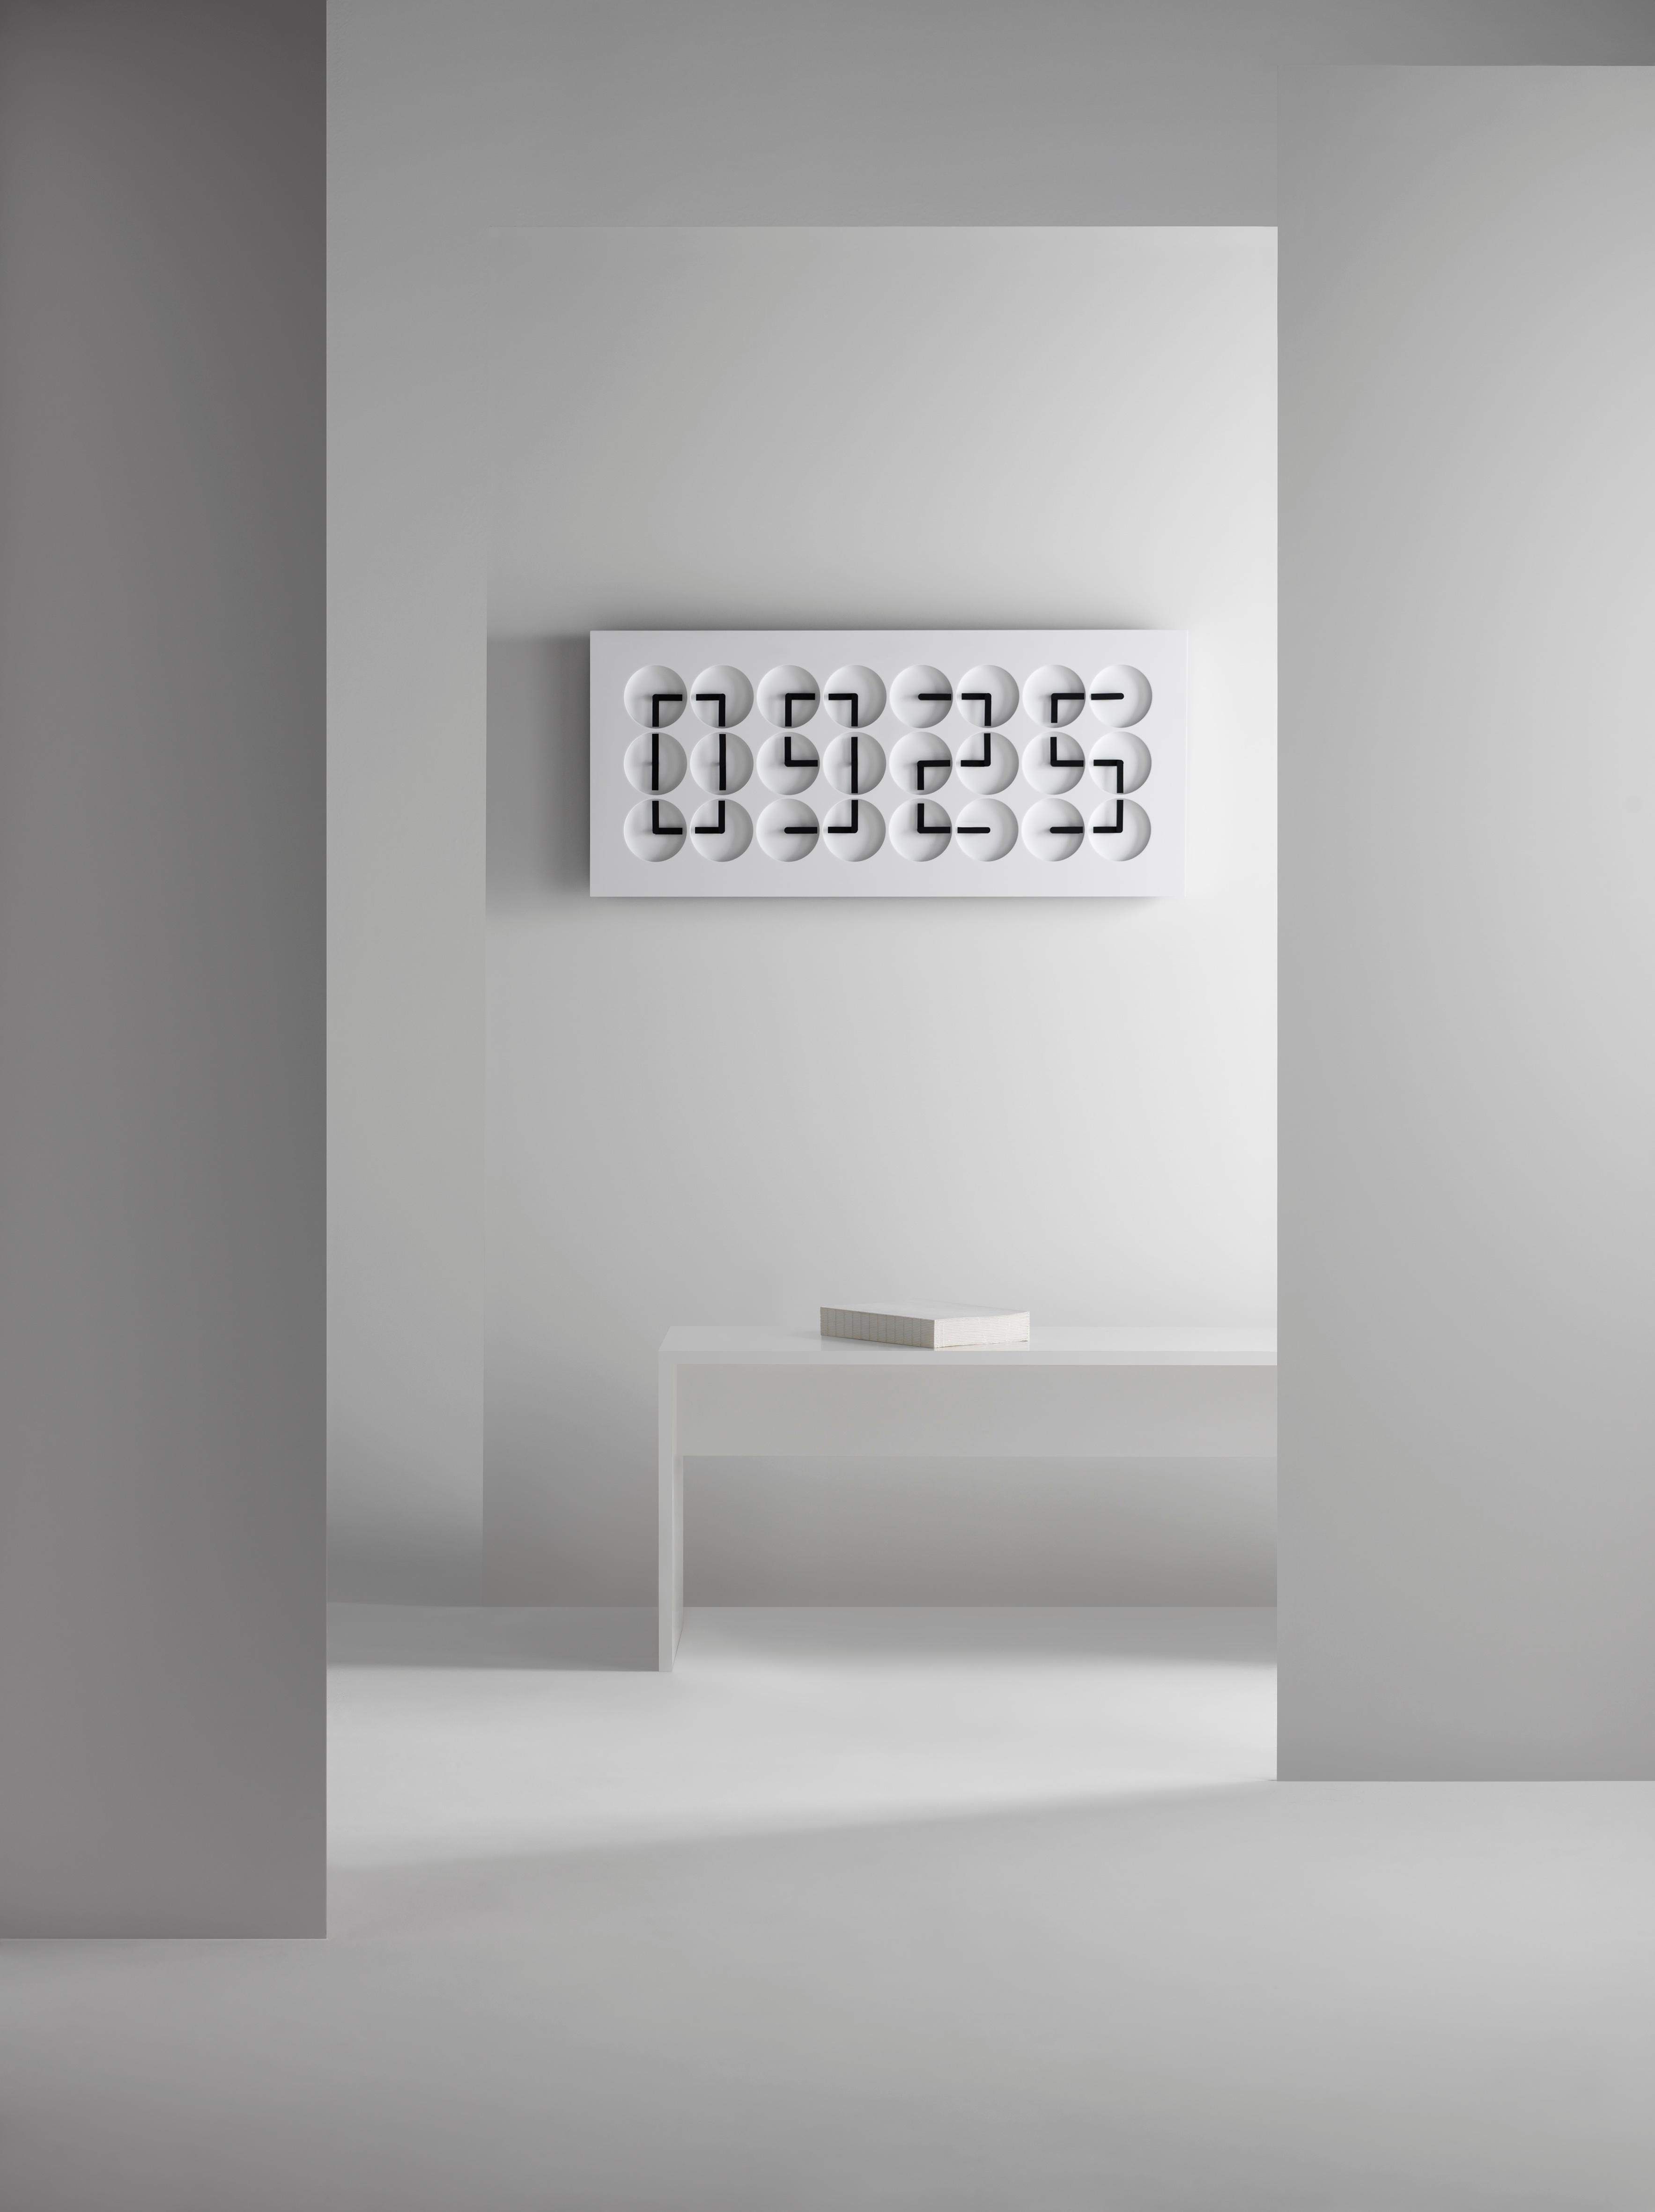 ClockClock 24 est à la fois une sculpture cinétique et une horloge murale fonctionnelle. Il s'agit d'une pièce de signature de Humans depuis 1982, depuis son lancement en 2016. Les aiguilles de l'horloge passent d'une rotation mécanique imprévisible